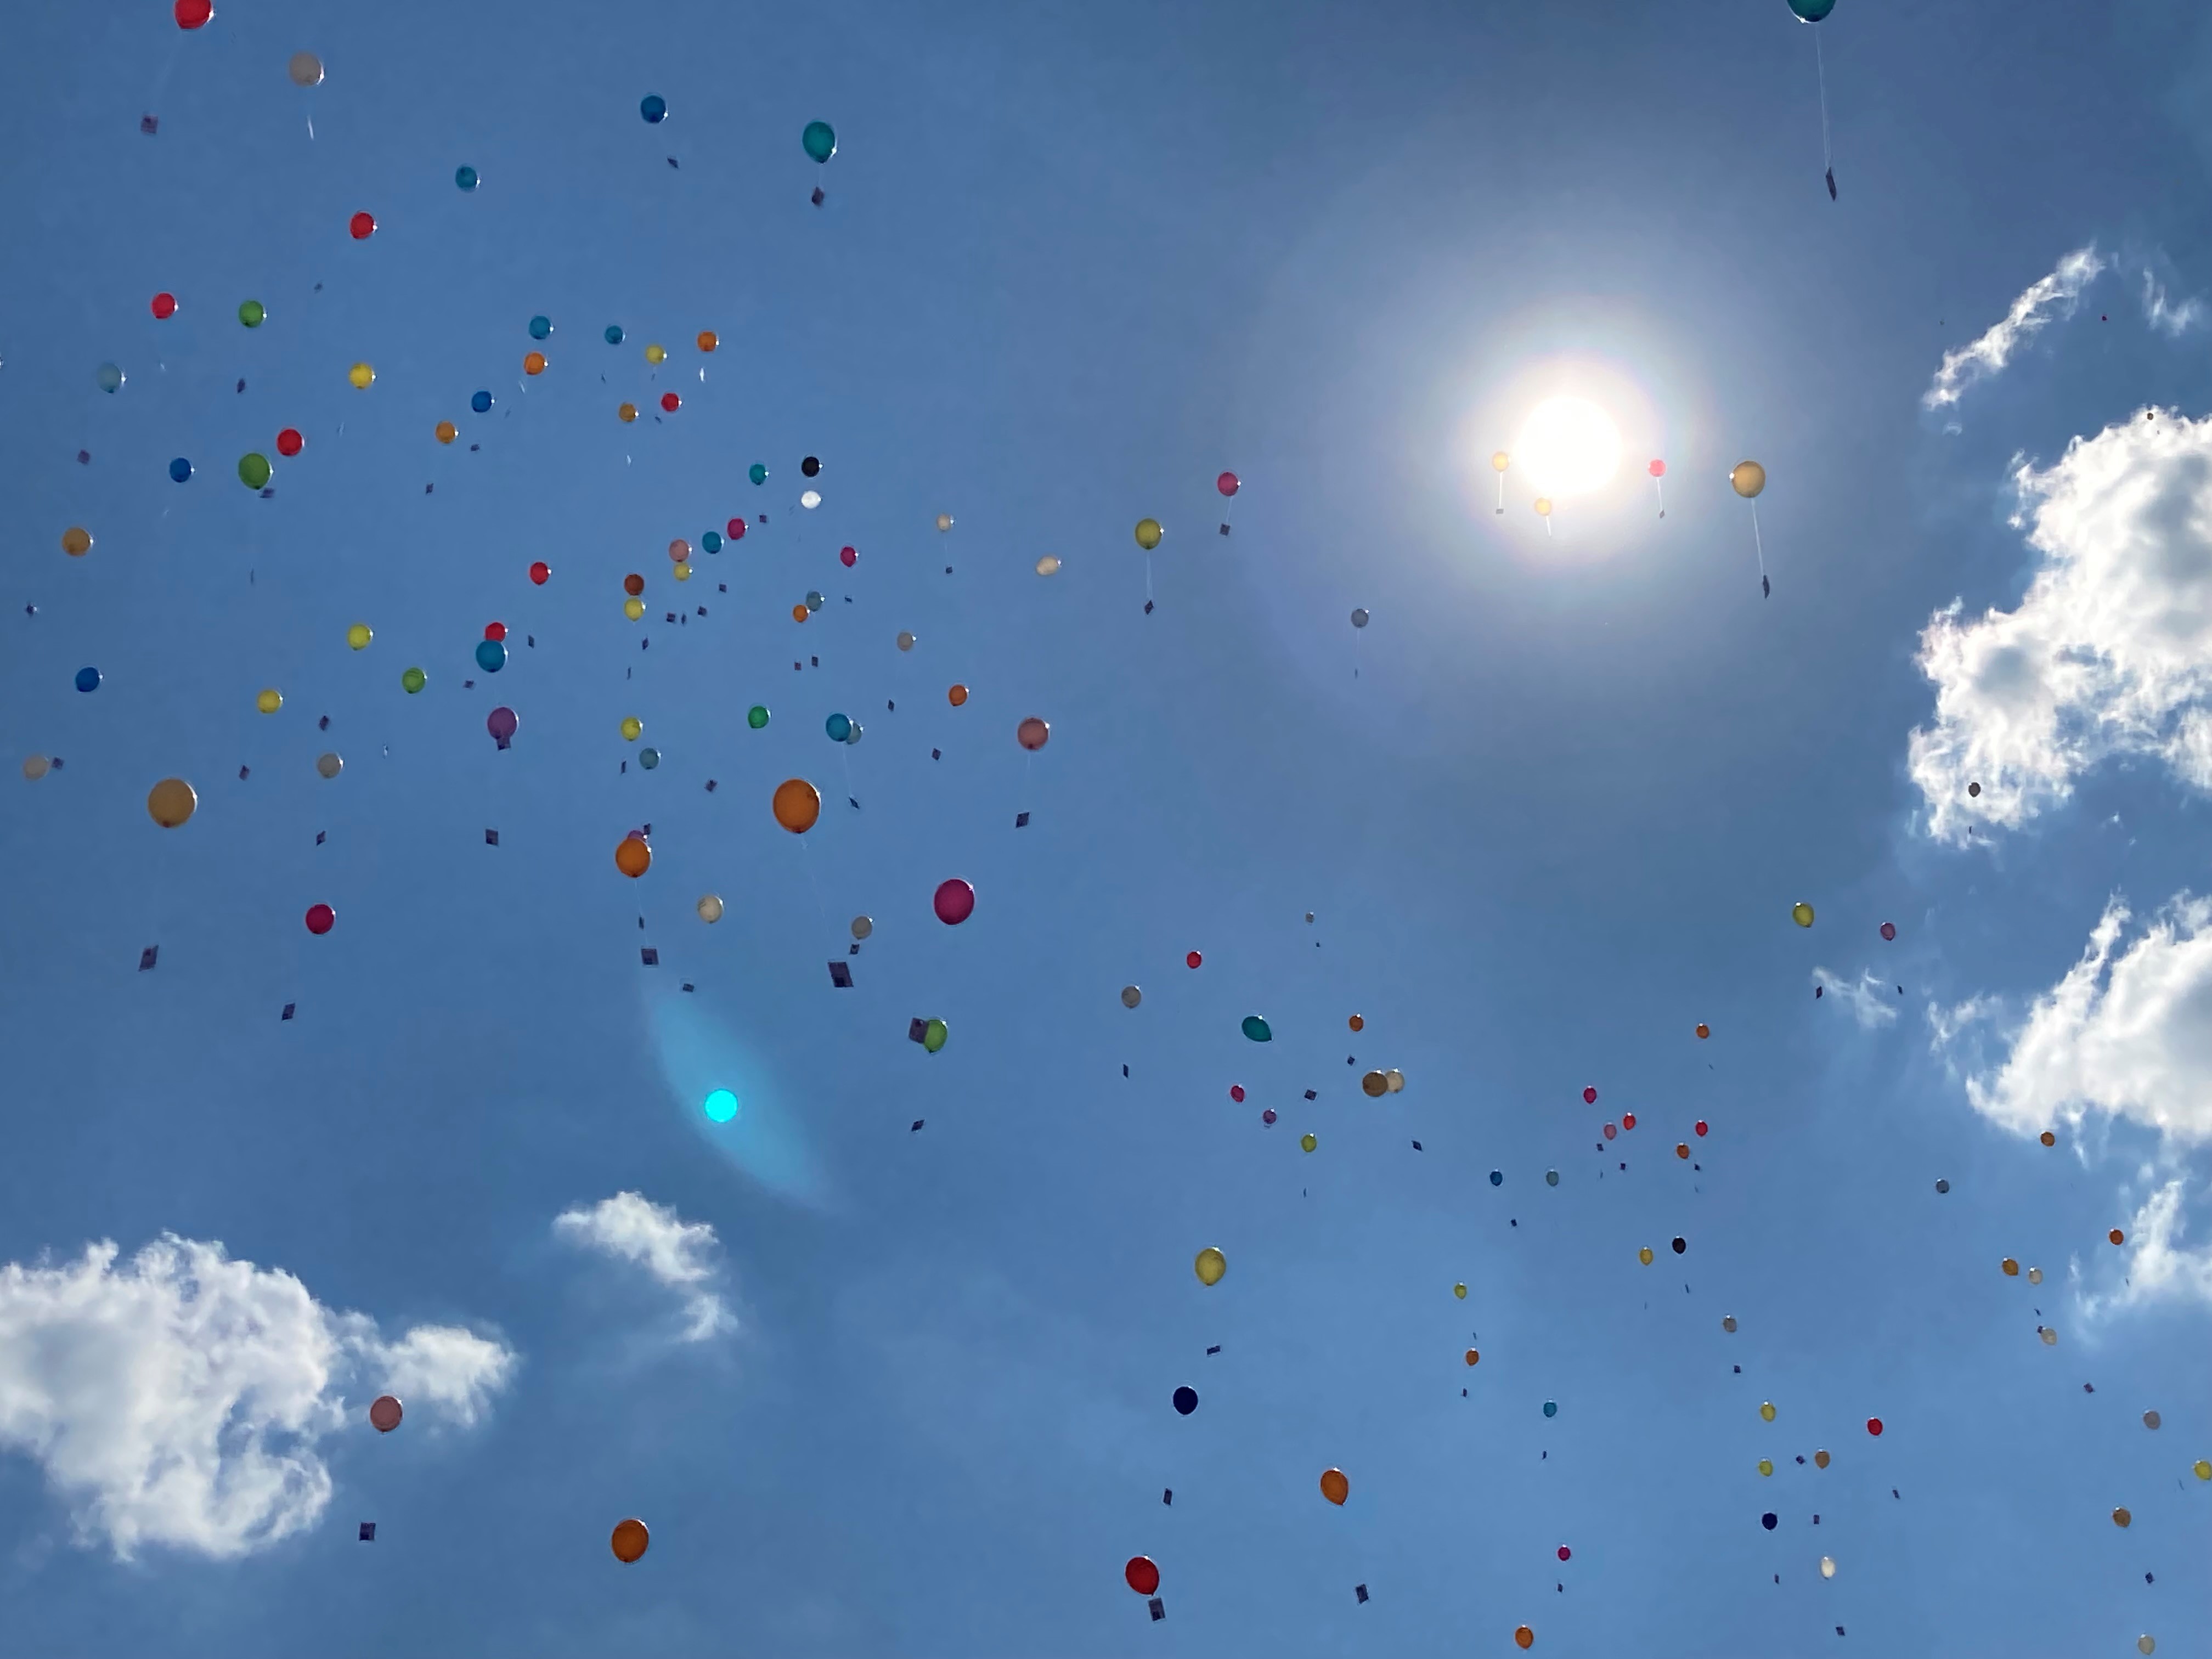  Die bunten Luftballons nach dem Start am blauen Himmel - das Bild wird mit Klick vergrößert 